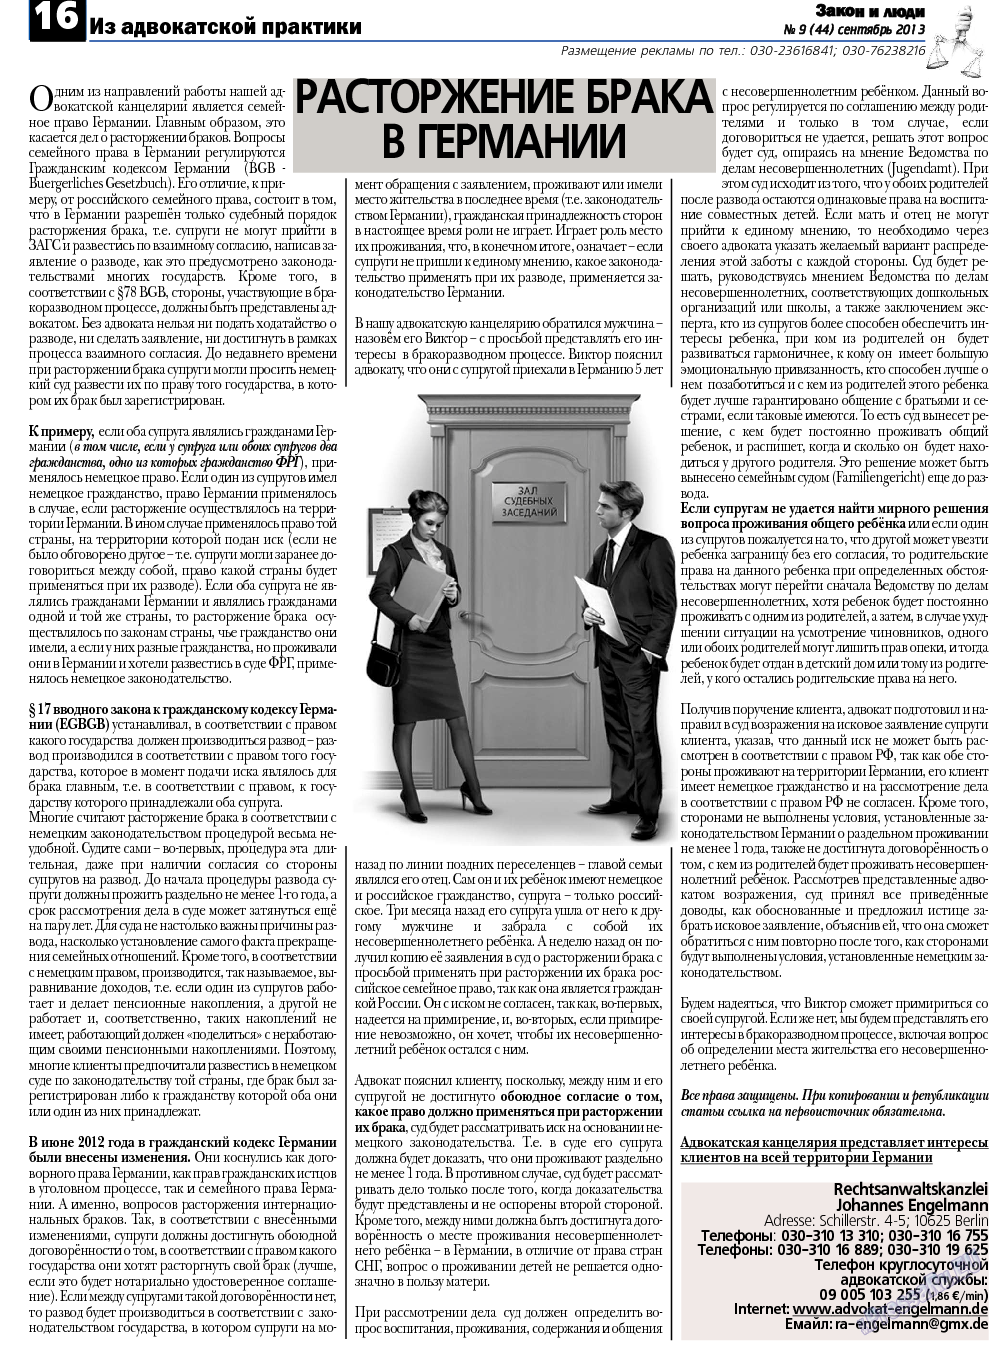 Закон и люди, газета. 2013 №9 стр.16